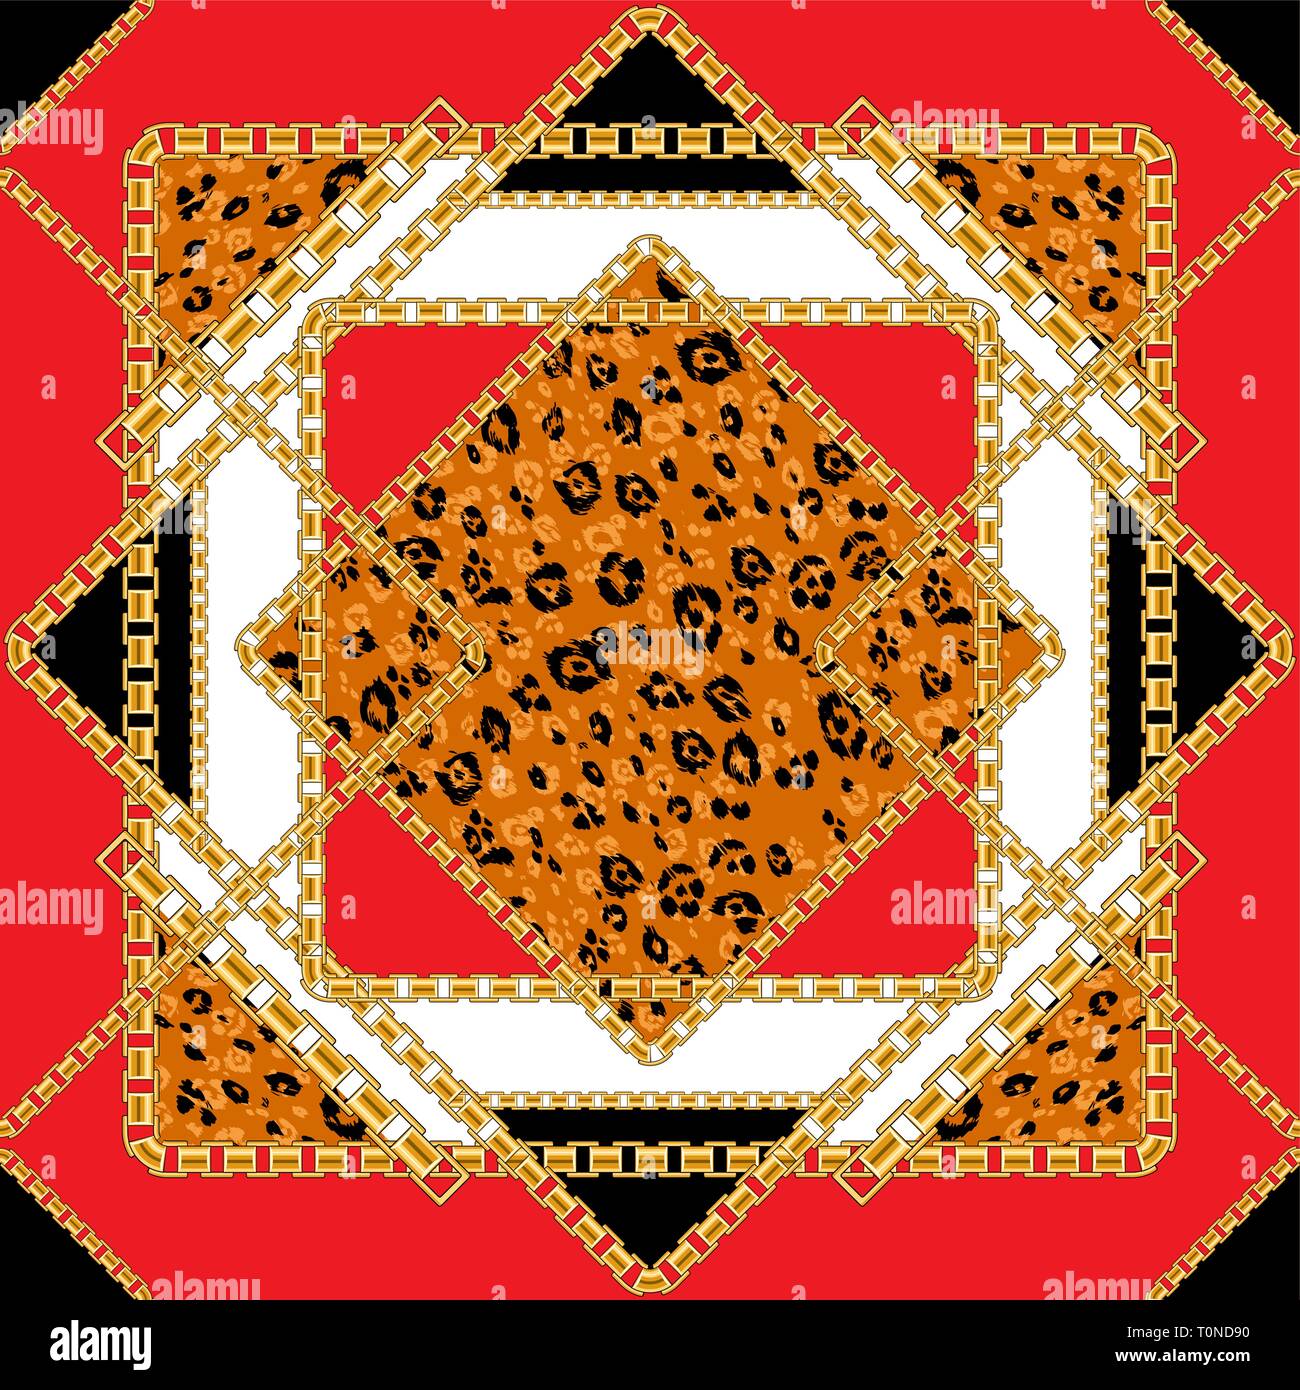 Fliese nahtlose Muster mit goldenen Kette mit tierischen Haut Hintergrund für Stoff. Trendy rot wiederholen Leopardenmuster. Stock Vektor